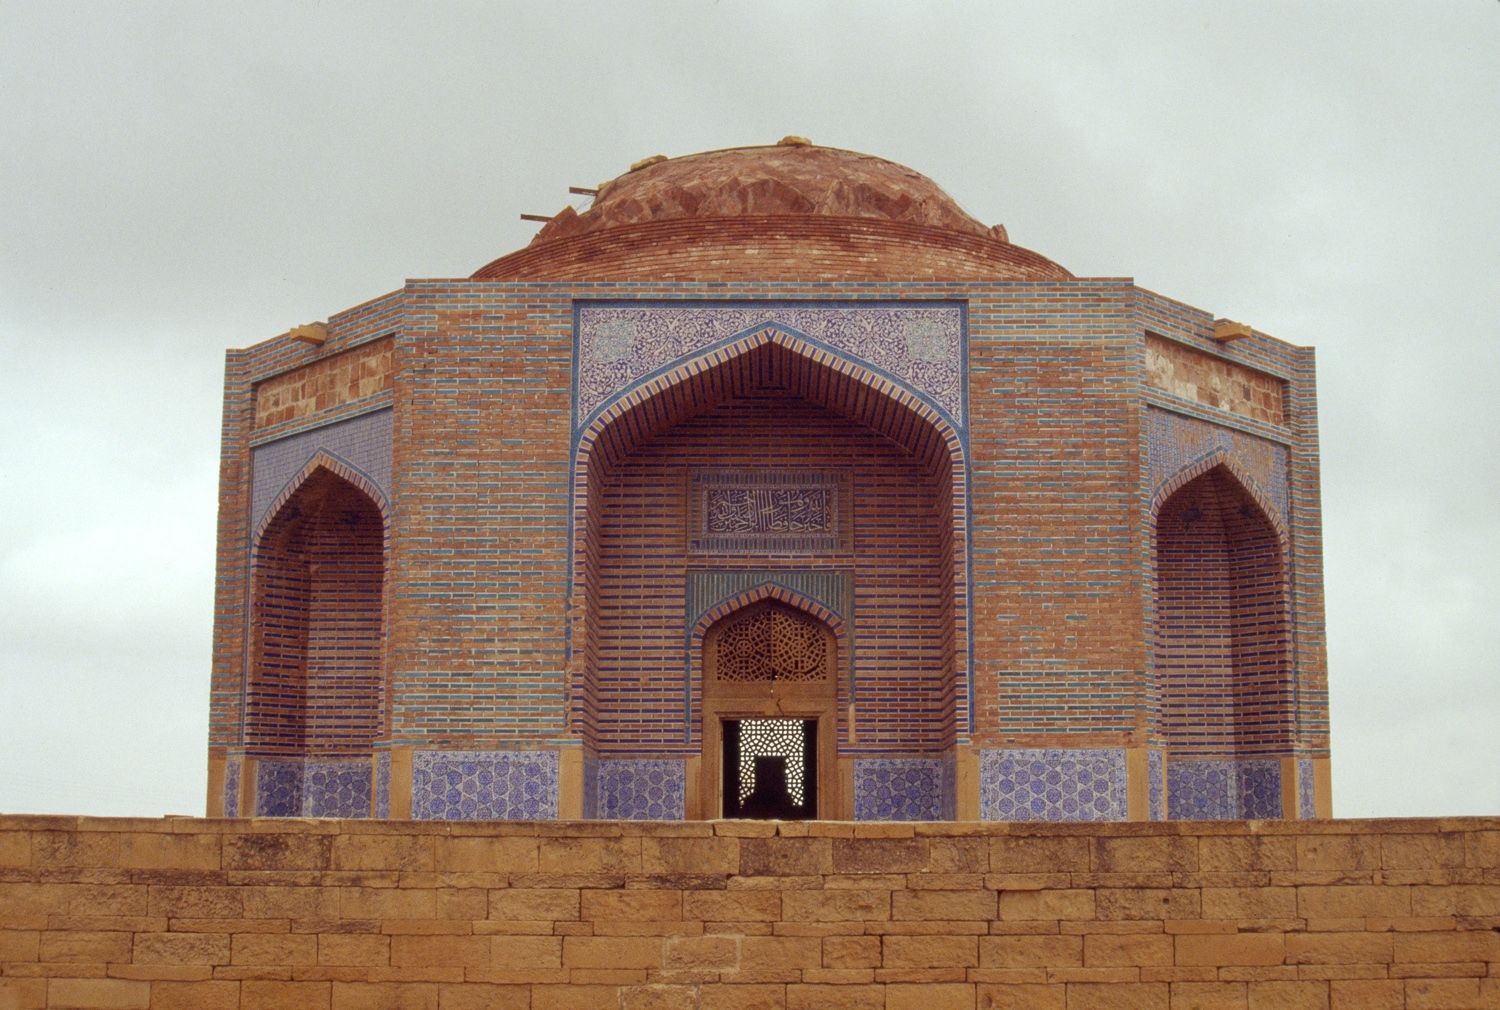 Tomb of Mirza Jani Beg